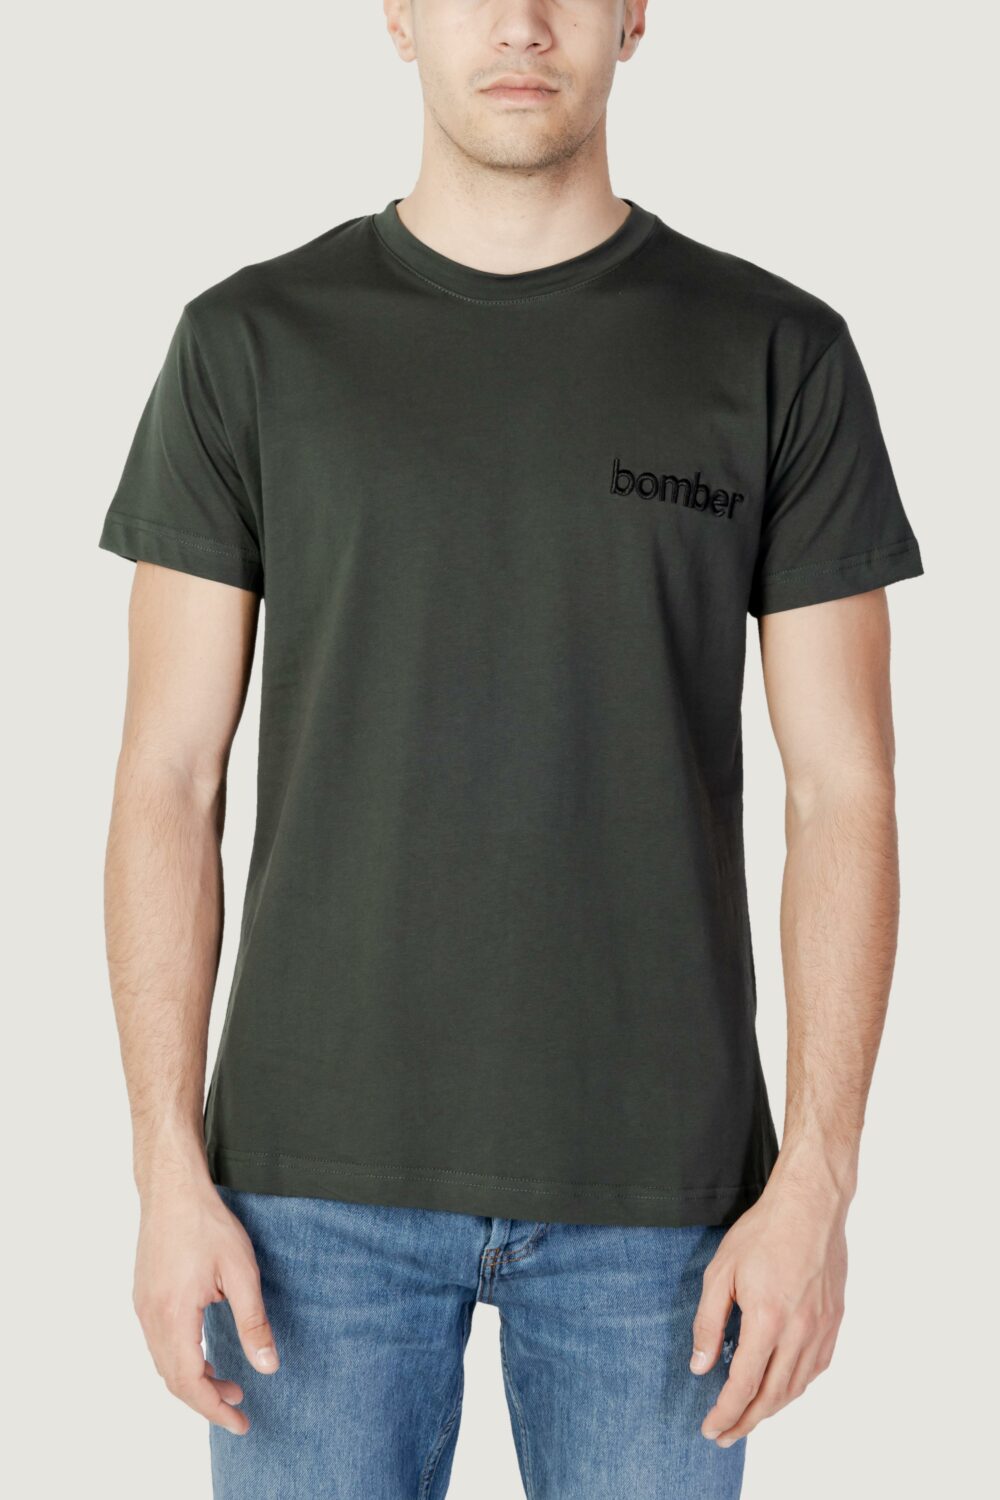 T-shirt The Bomber logo Verde Oliva - Foto 1